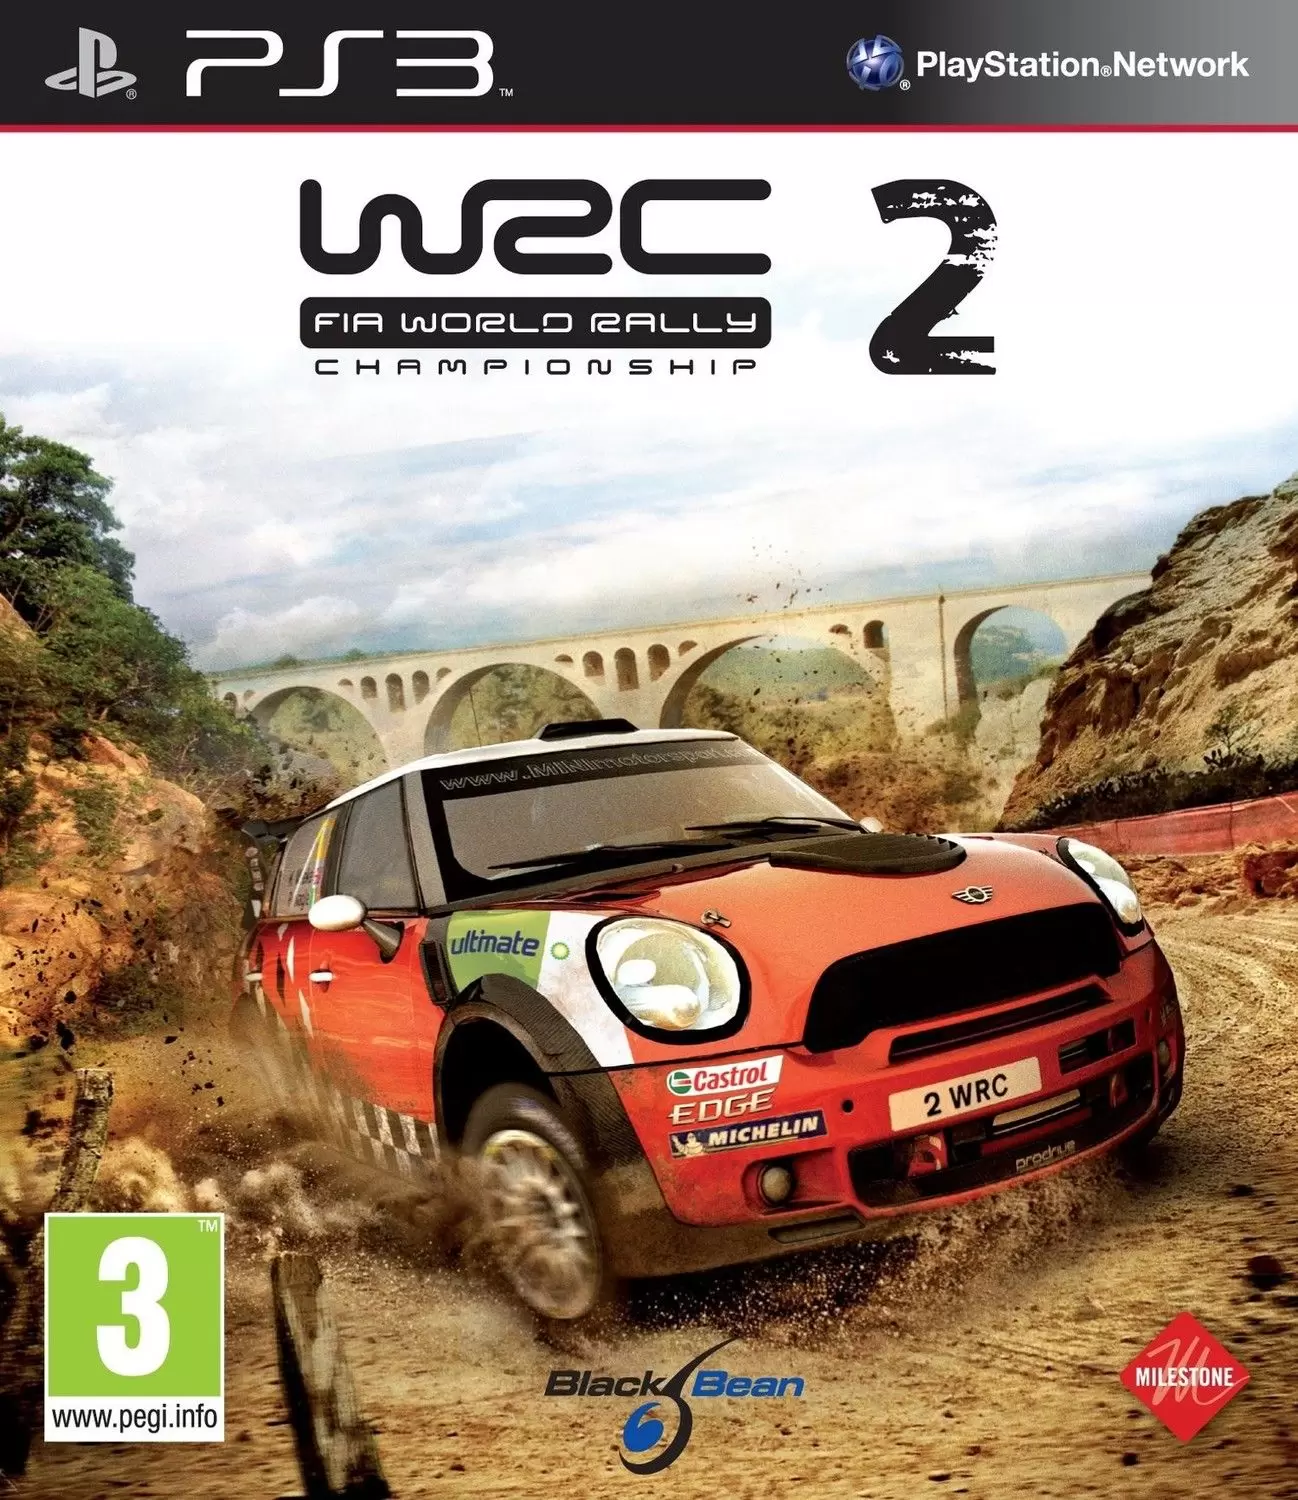 PS3 Games - WRC 2